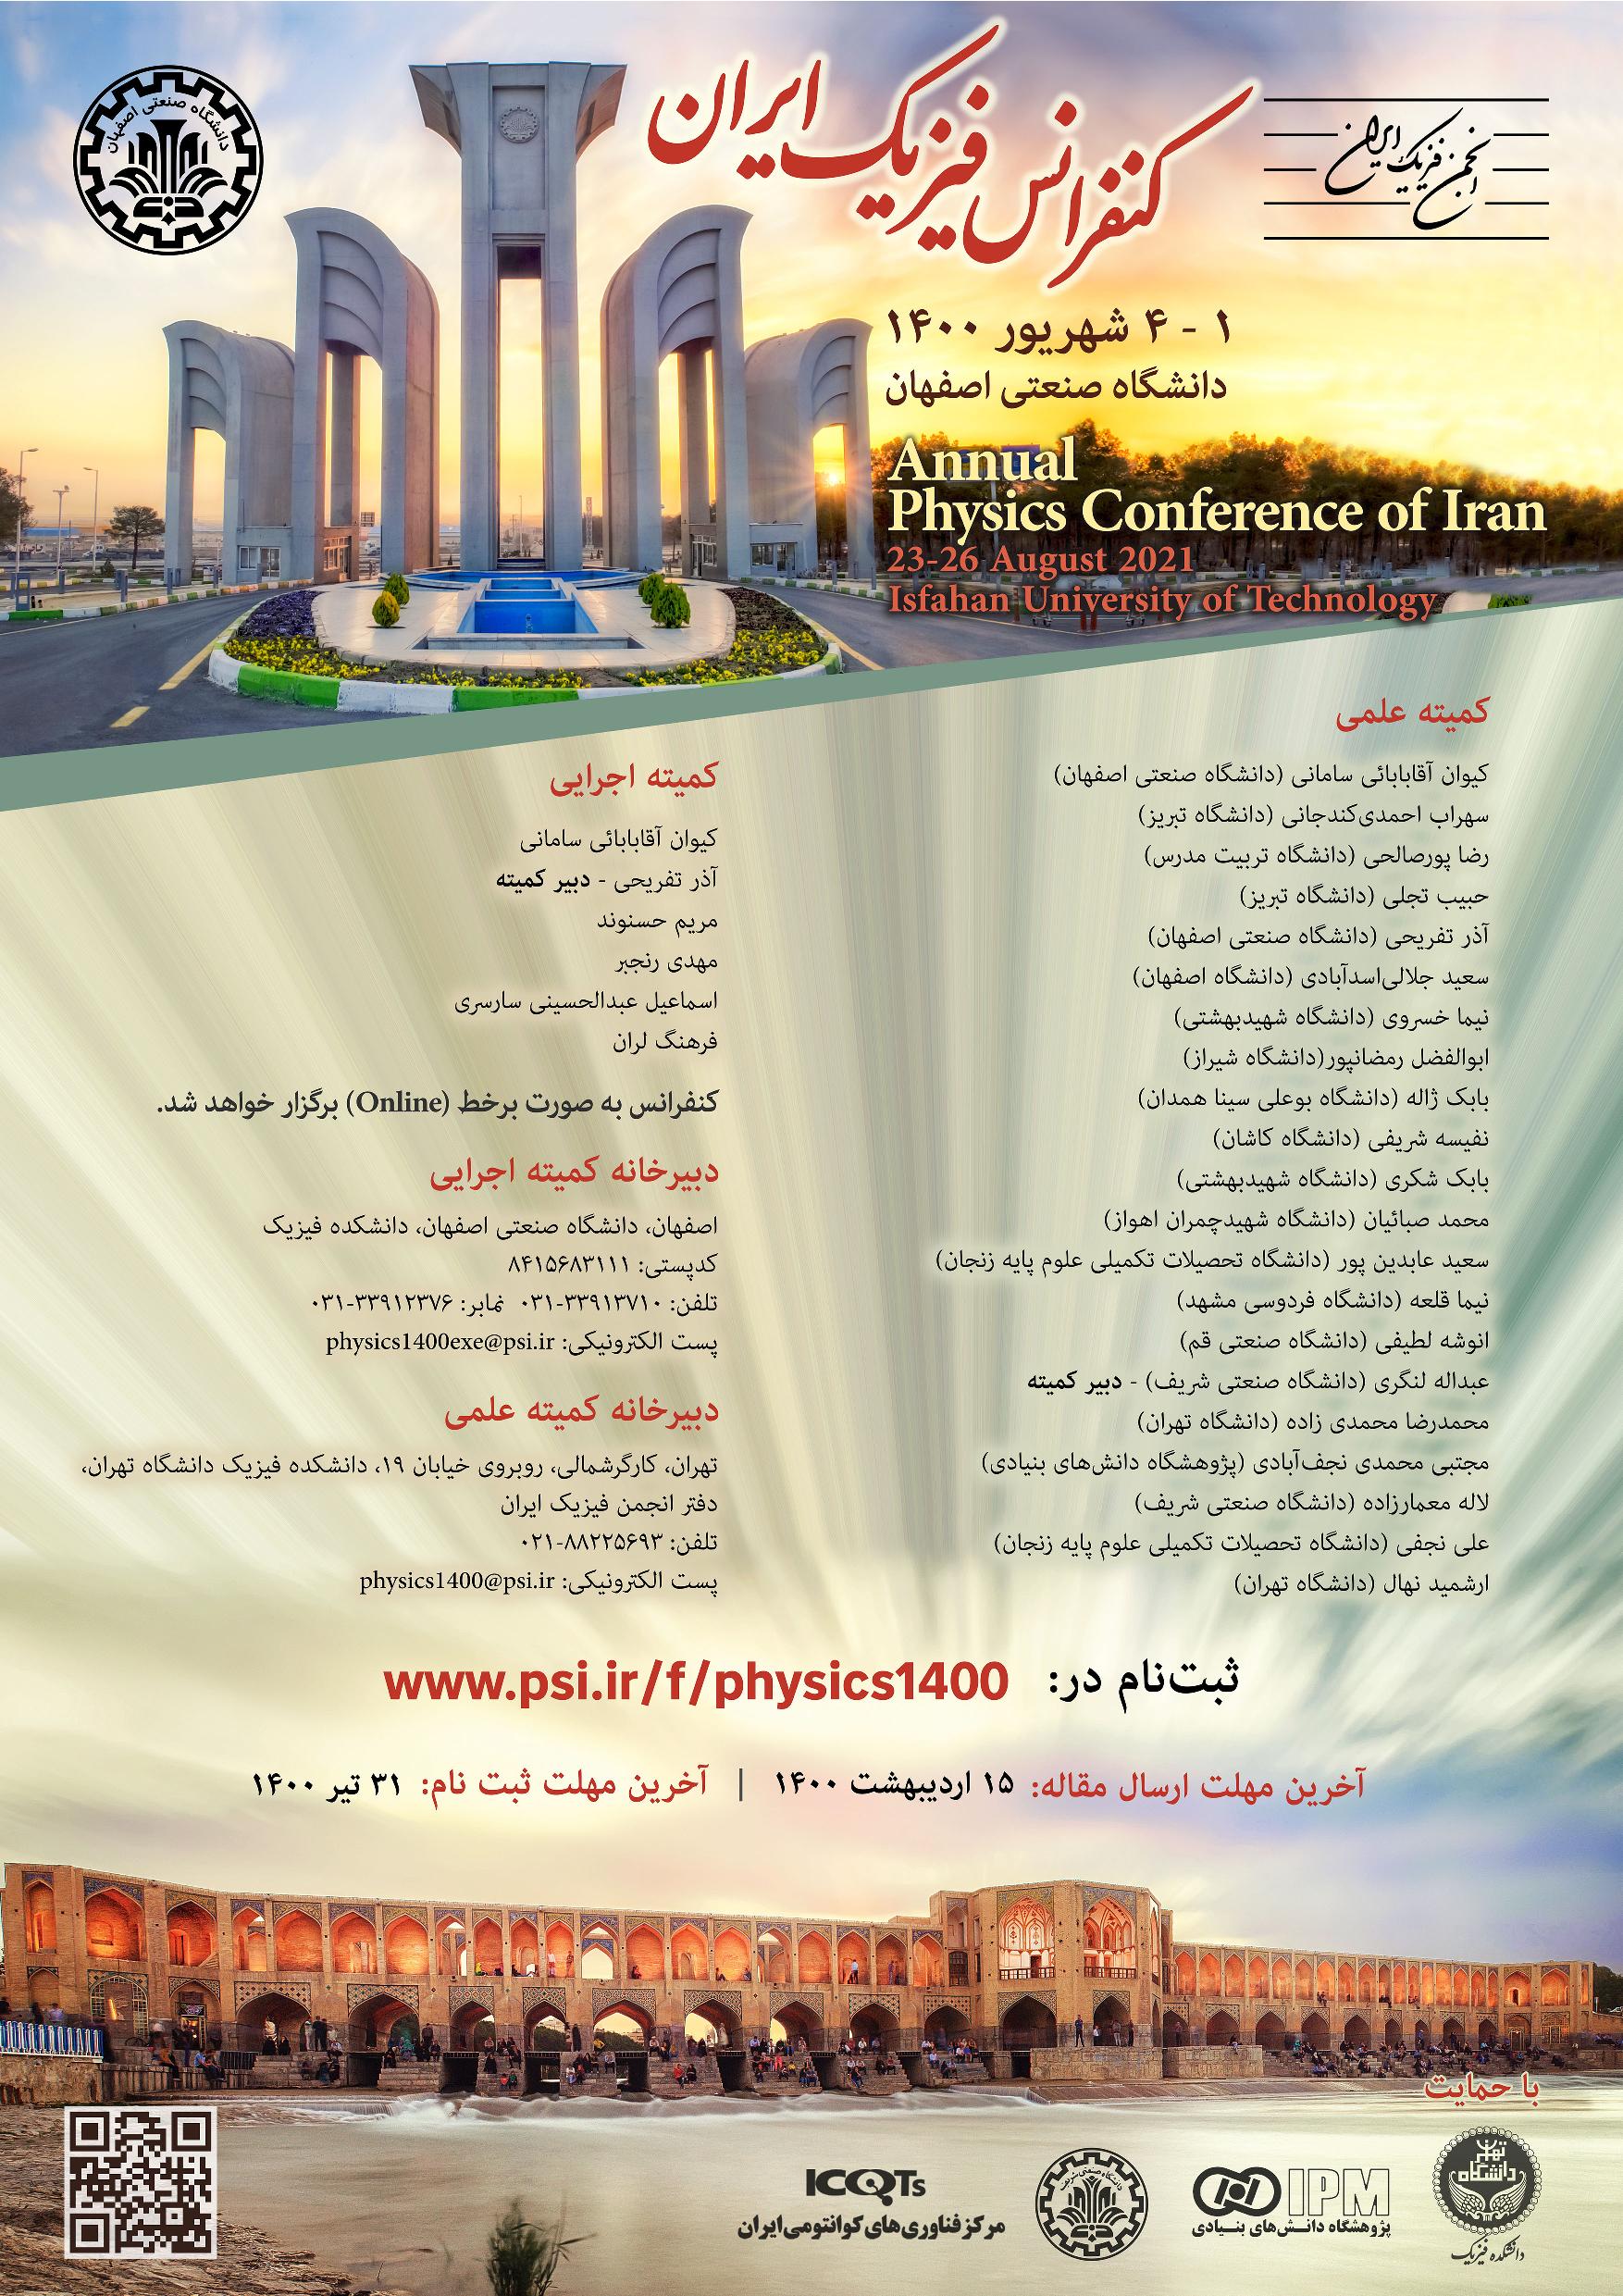 کنفرانس سالانه فیزیک ایران به میزبانی دانشگاه صنعتی اصفهان برگزار می شود